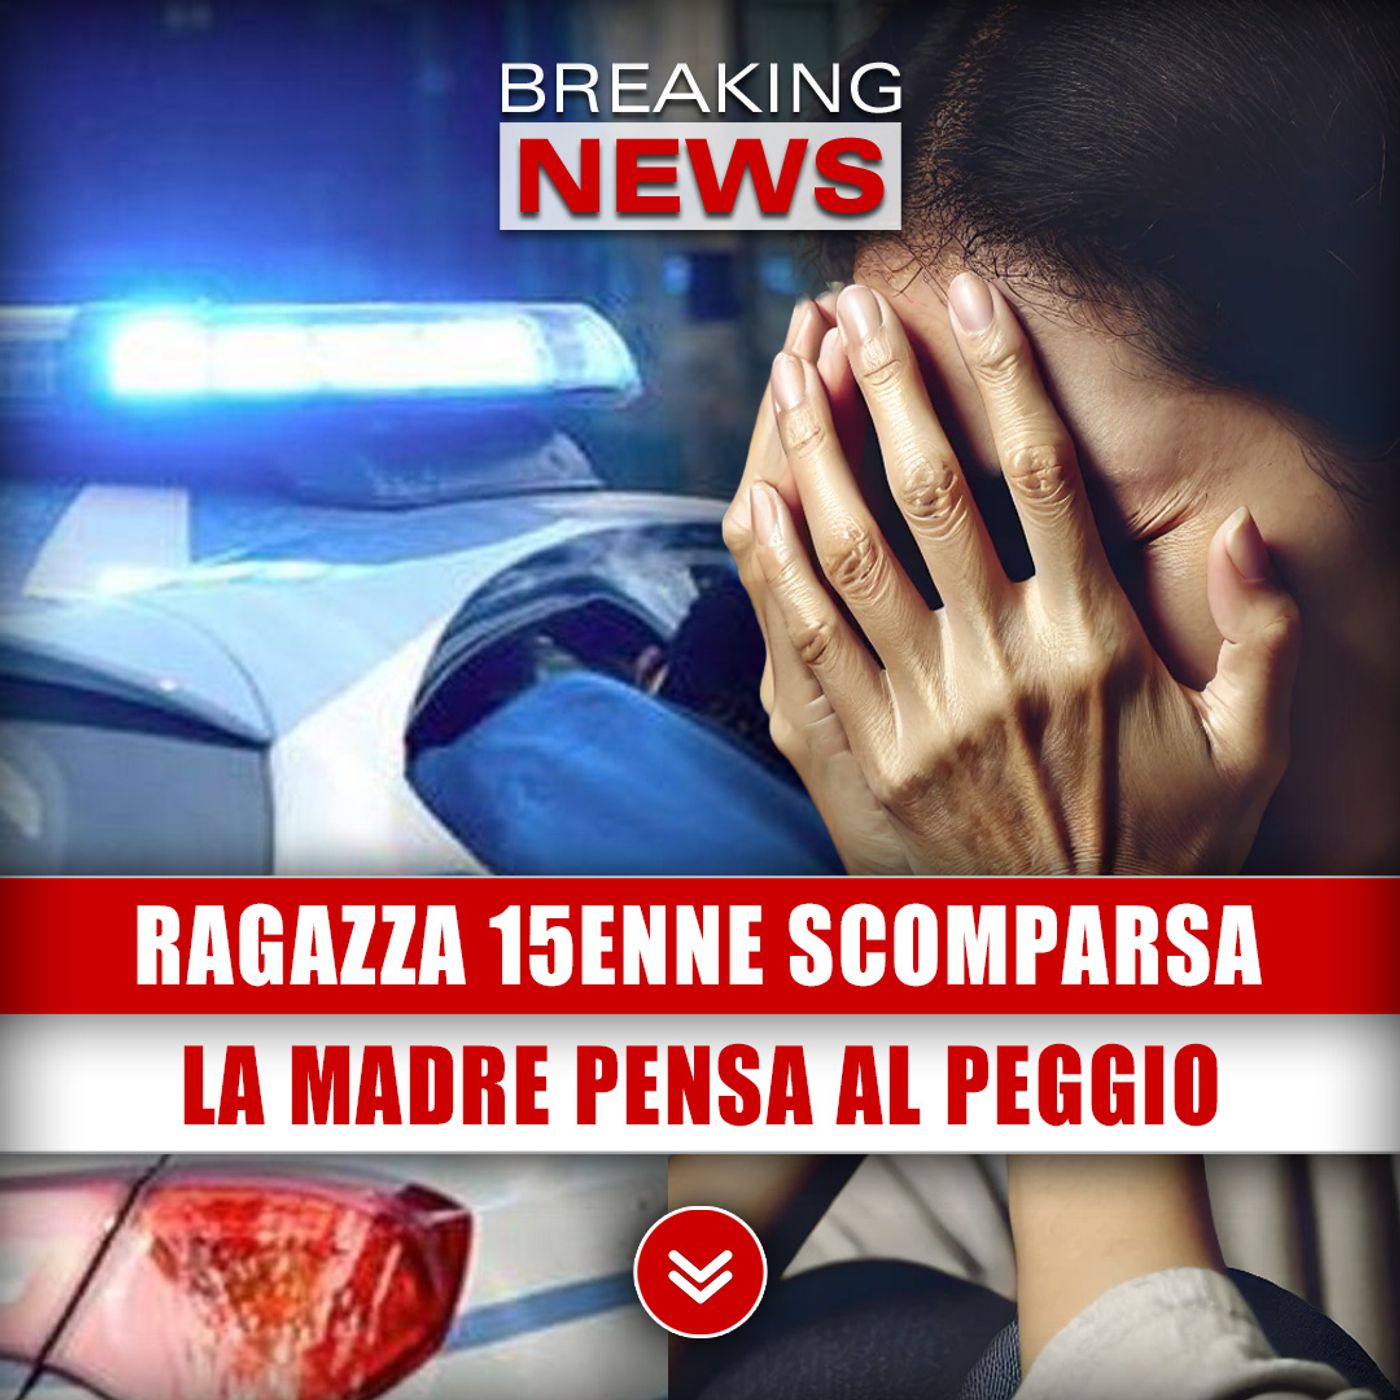 Ragazza 15enne Scomparsa: La Madre Pensa Al Peggio!